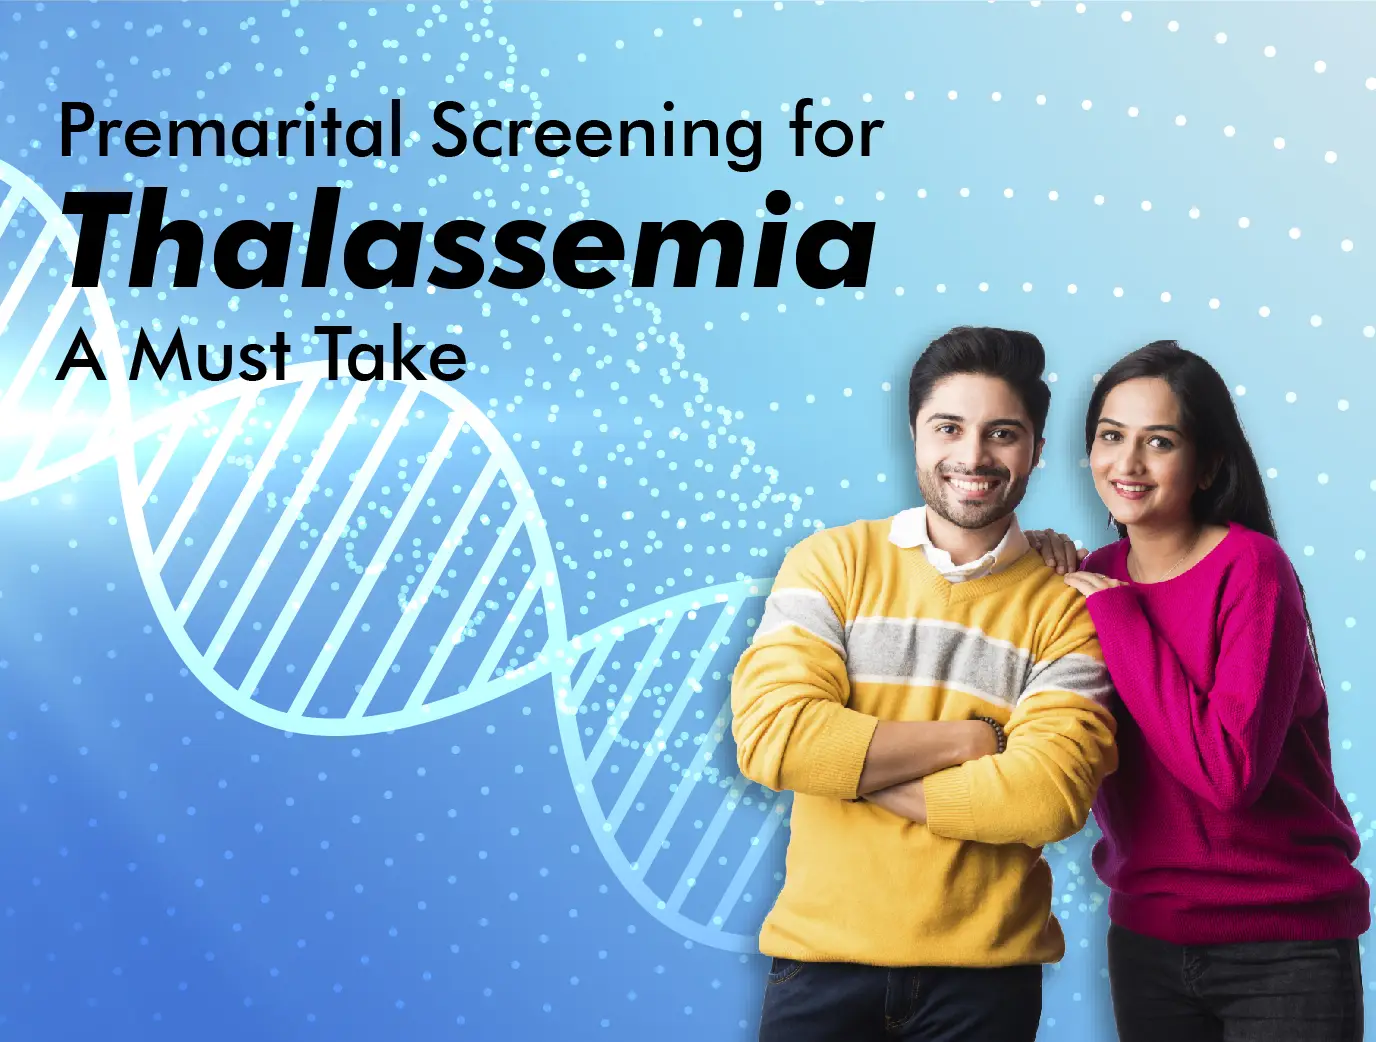 Premarital Screening for Thalassemia – A Must Take